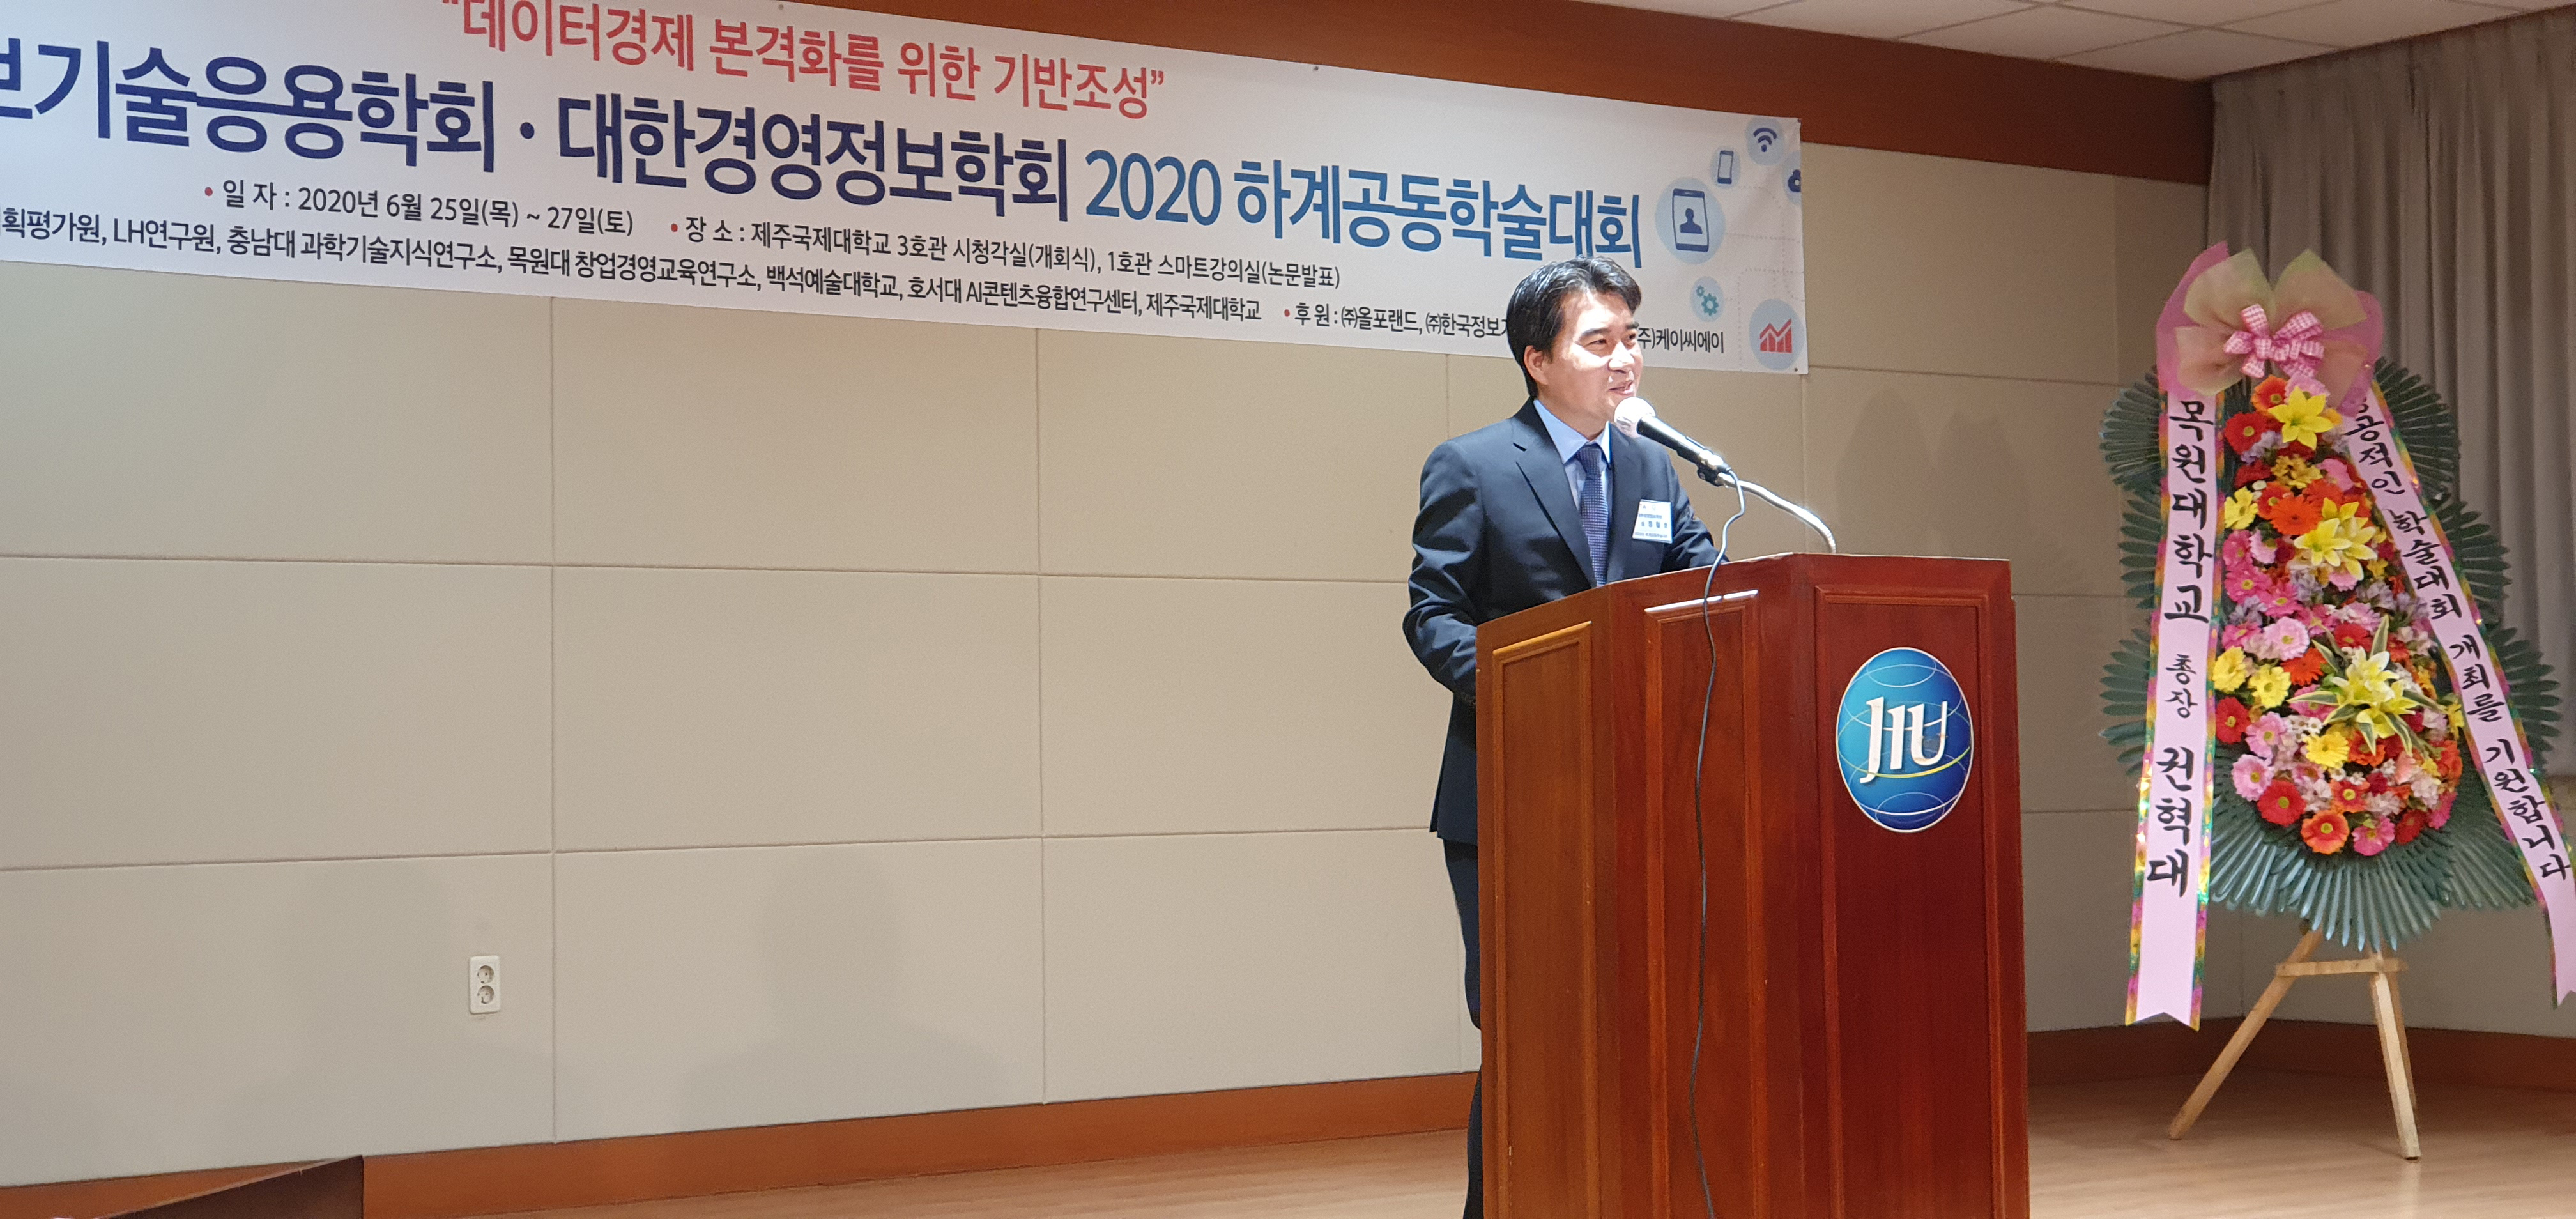 2020년 하계공동학술대회  정철호 회장 환영사